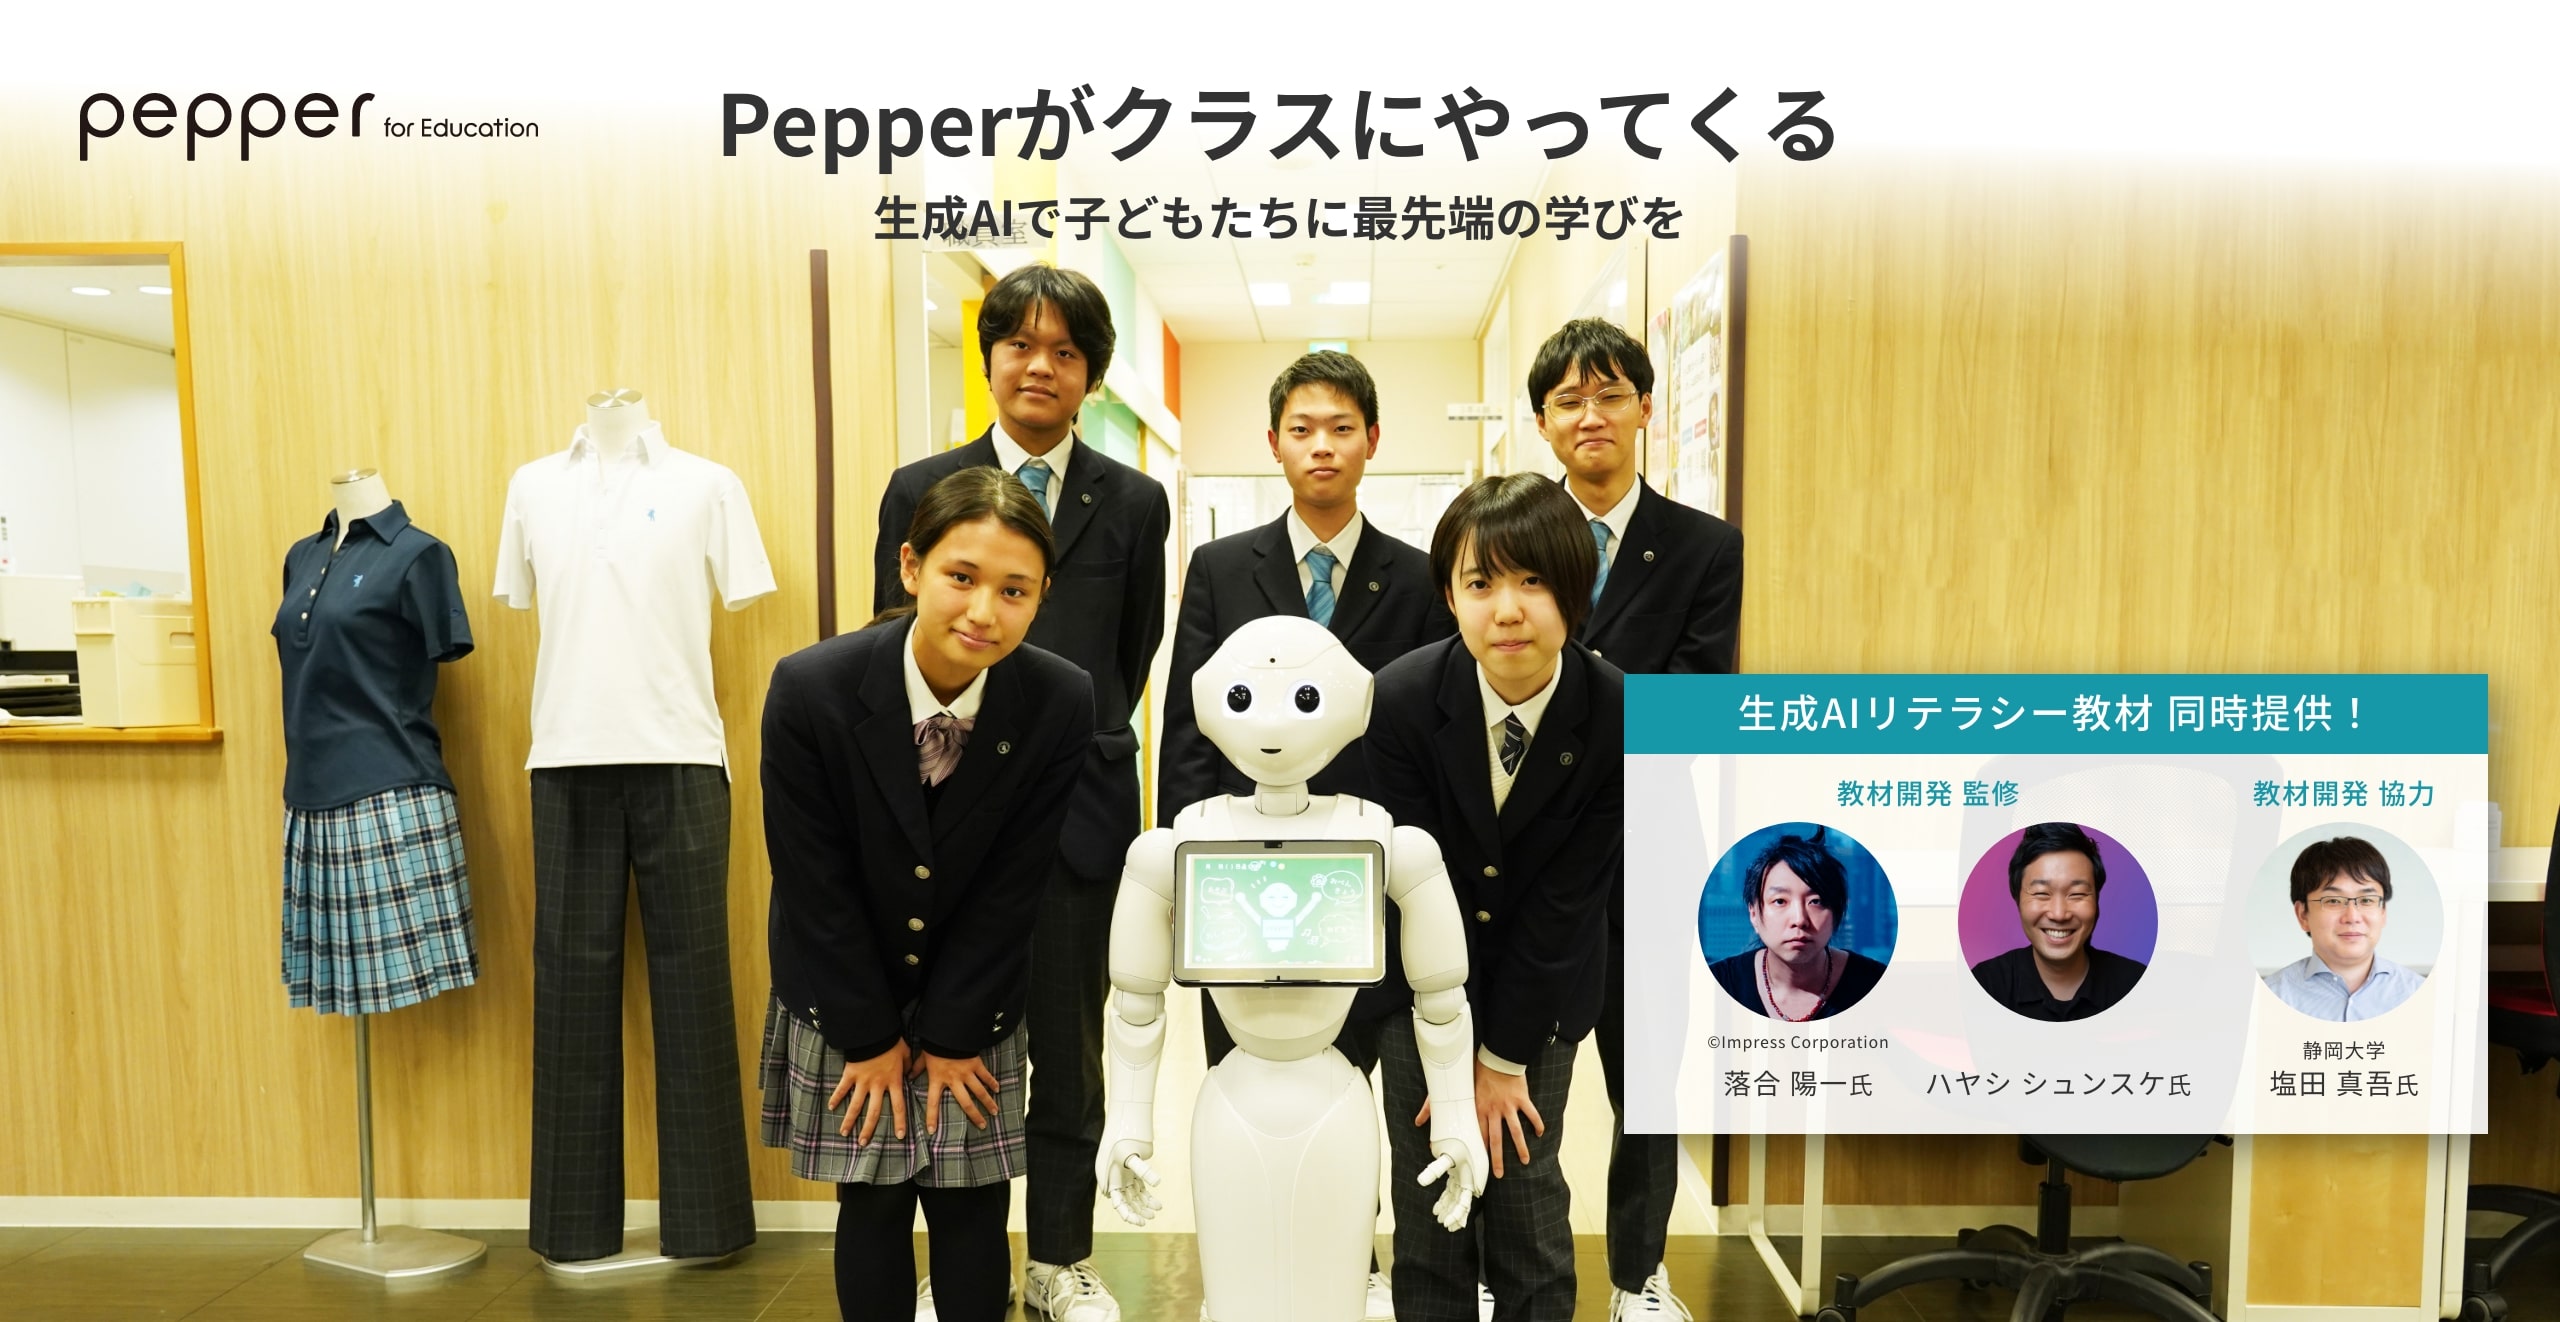 Pepper for Education Pepperがクラスにやってくる 生成AIで子どもたちに最先端の学びを 生成AI専用教材 同時提供 教材開発監修 ハヤシ シュンスケ 氏 落合 陽一 氏 教材開発協力 静岡大学 塩田 真吾 氏